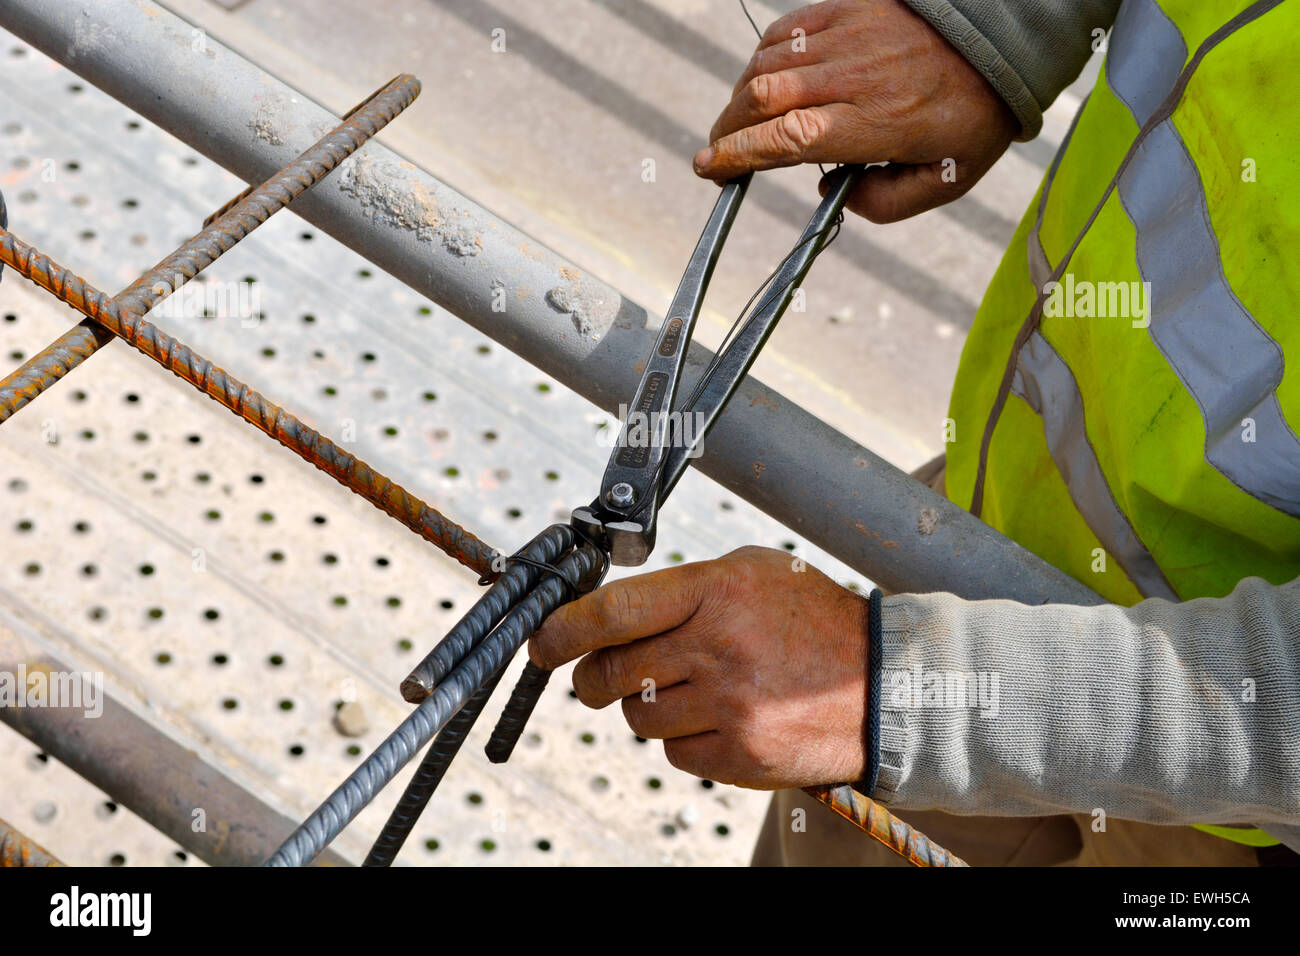 Arbeiter mit Zange und Draht, um Stahl, Betonstahl für armierten Beton  zusammen zu binden gießen Stockfotografie - Alamy